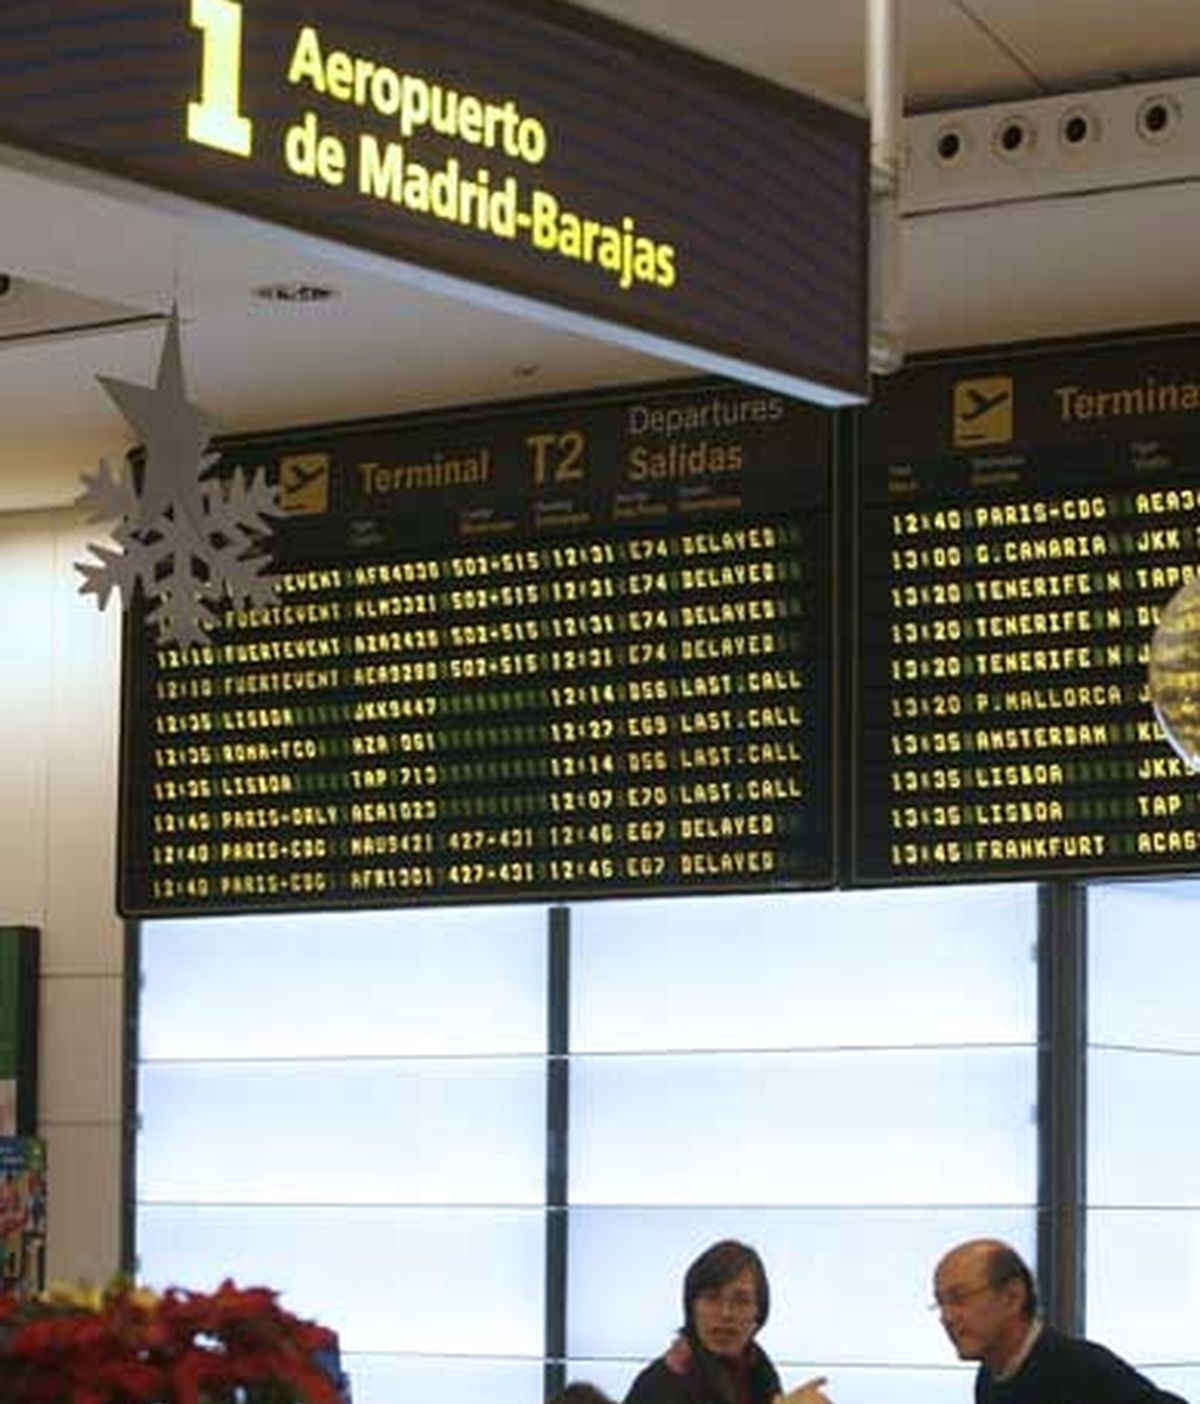 Viajeros reciben información en el aeropuerto de Barajas, bajo los paneles anunciadores que avisan de los retrasos que se prevén para distintos vuelos. Foto: EFE